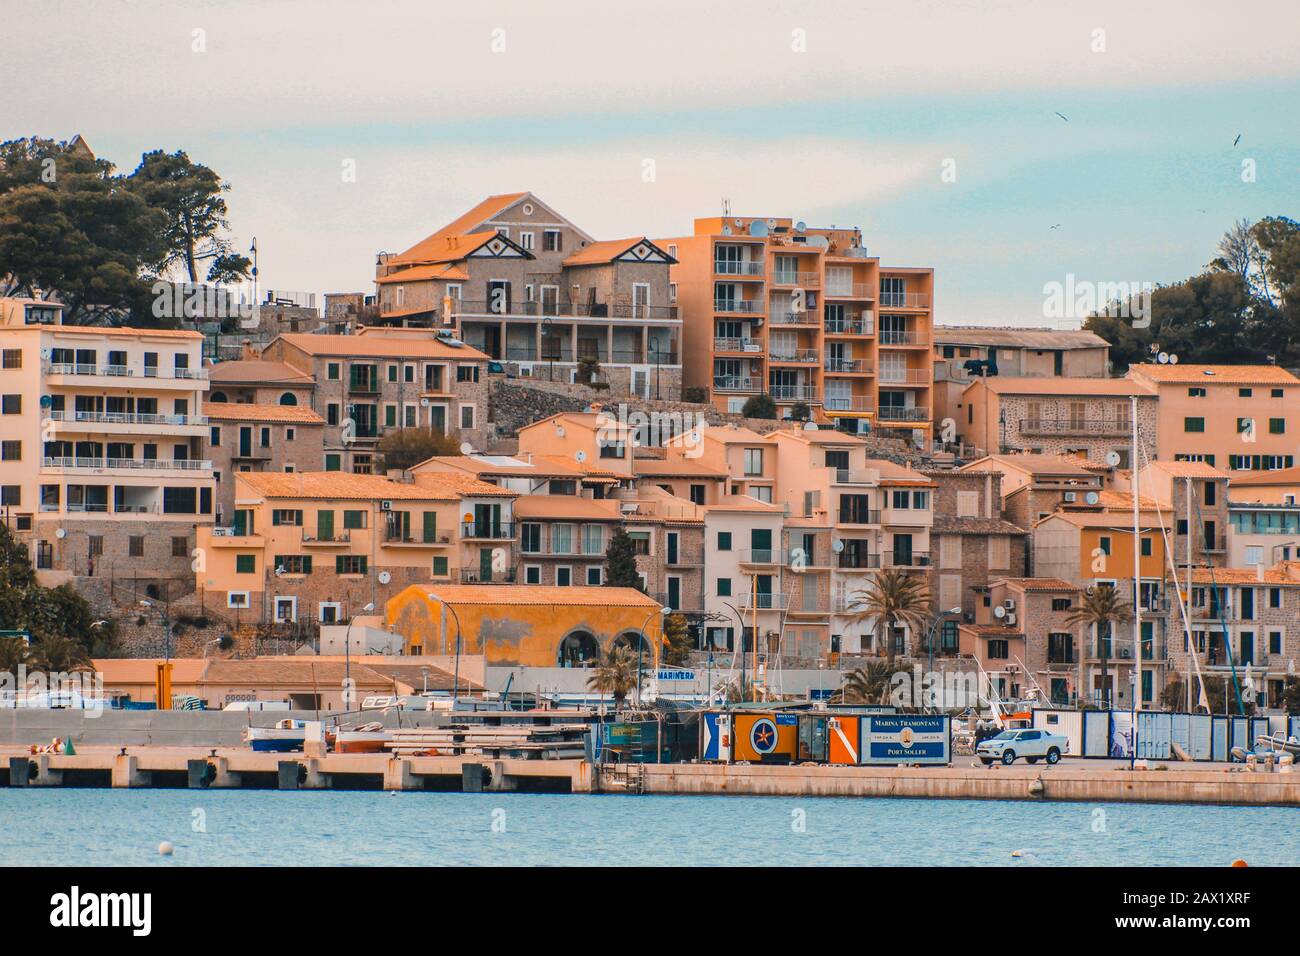 View of scenic Port De Soller in Mallorca, Spain Stock Photo